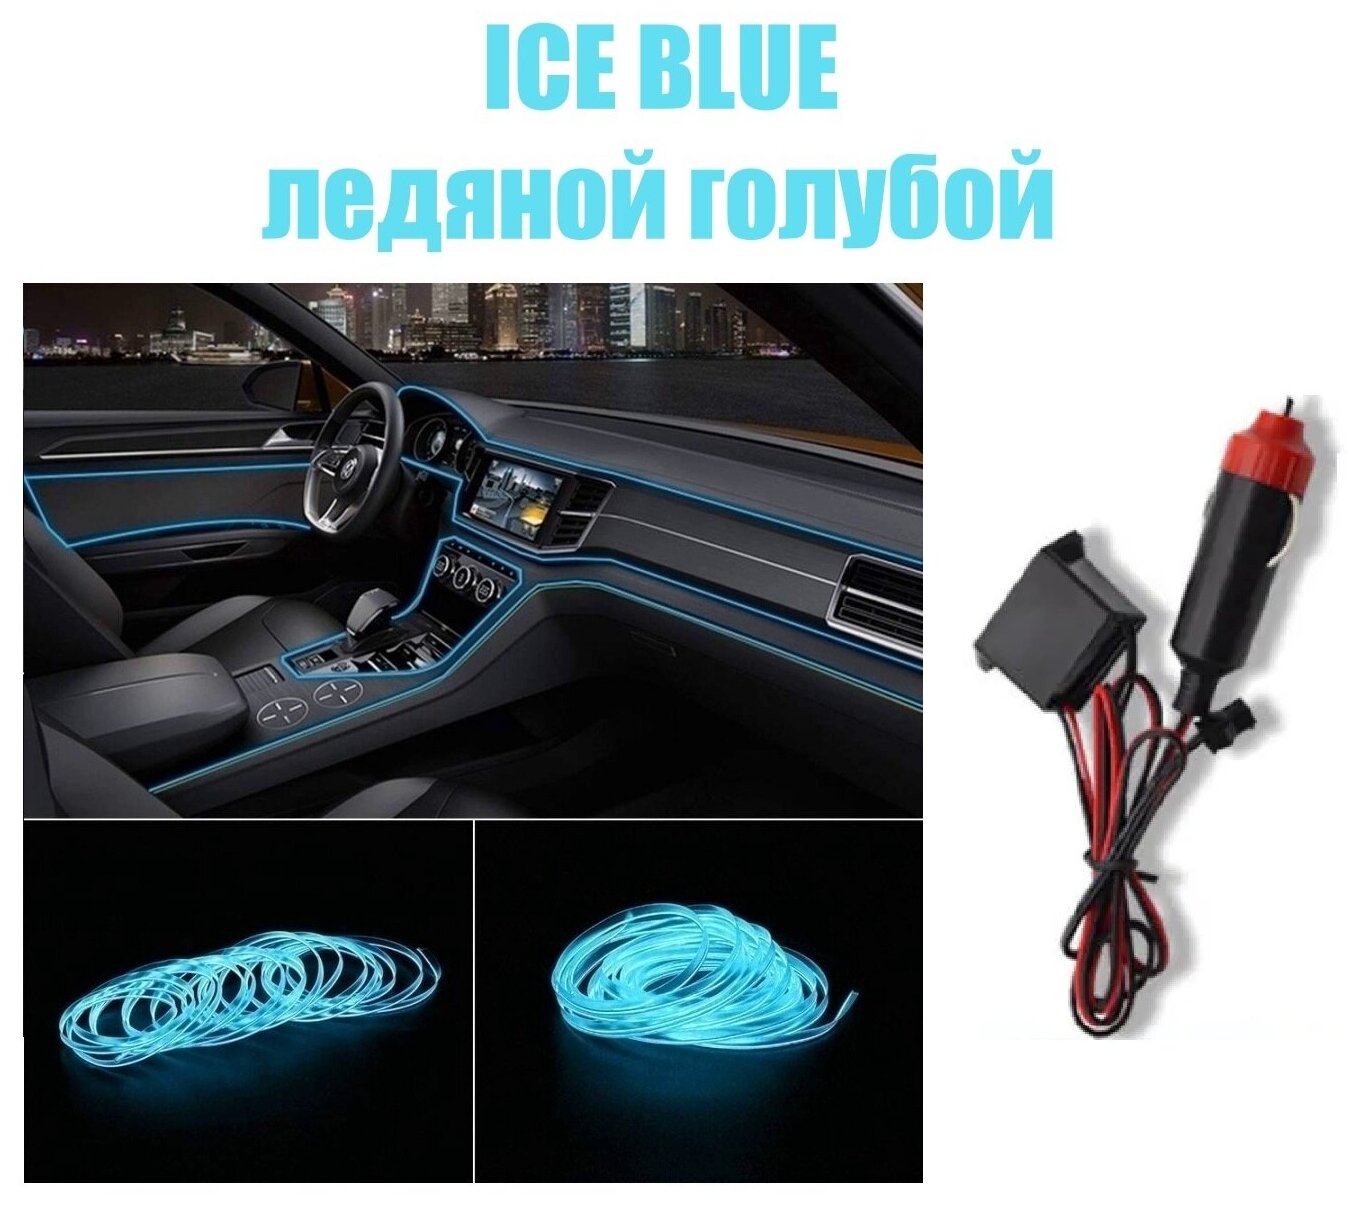 Светодиодная неоновая лента для авто, неоновая нить в машину, в прикуриватель 12 Вольт, 5 метров, ледяной голубой (ice blue)